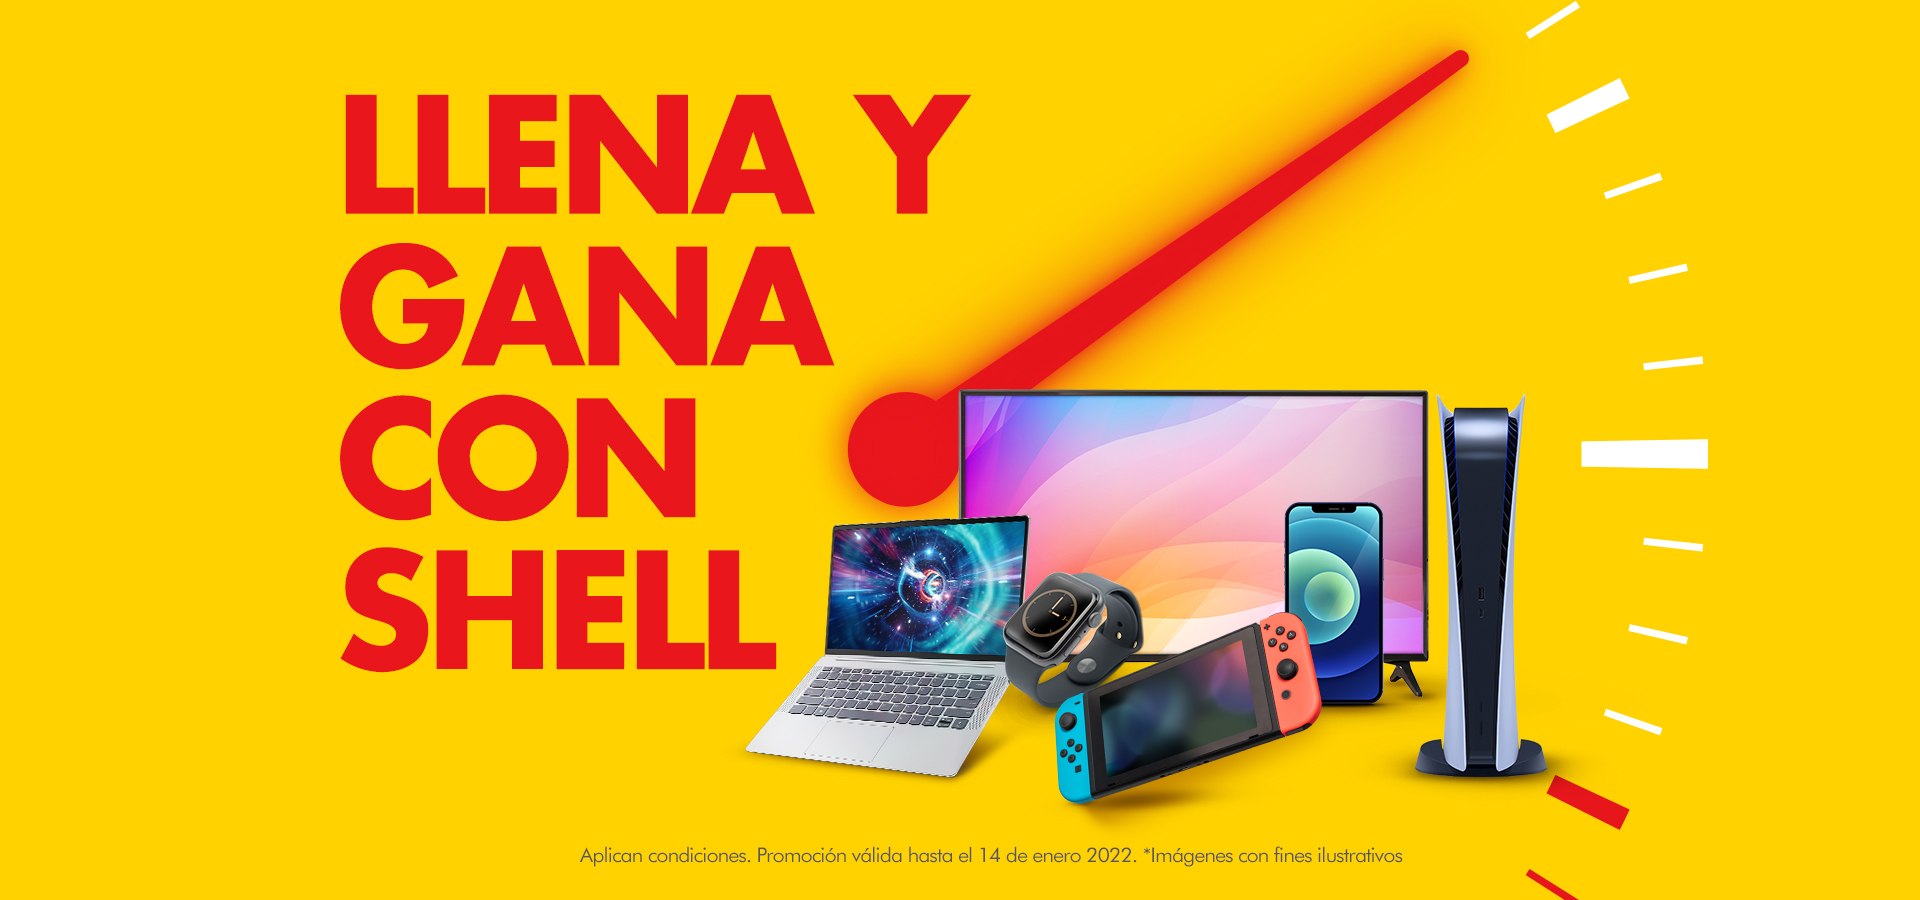 Llega la revolución tecnológica con la promoción "Llena y Gana con Shell"